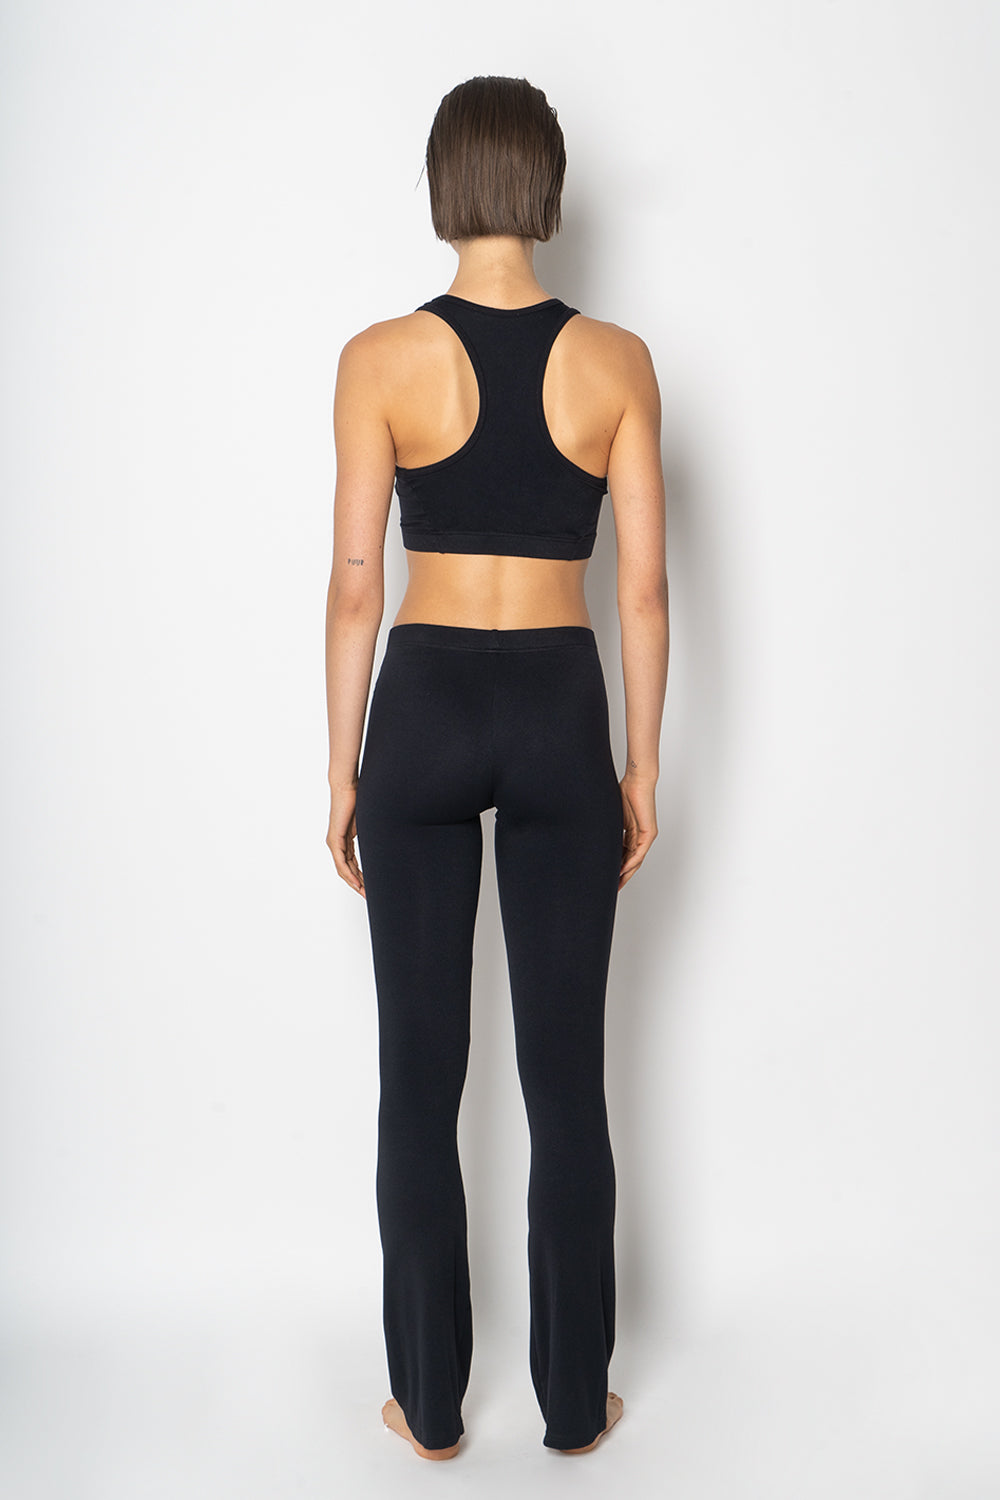 Tina sports-bra in M-Black color